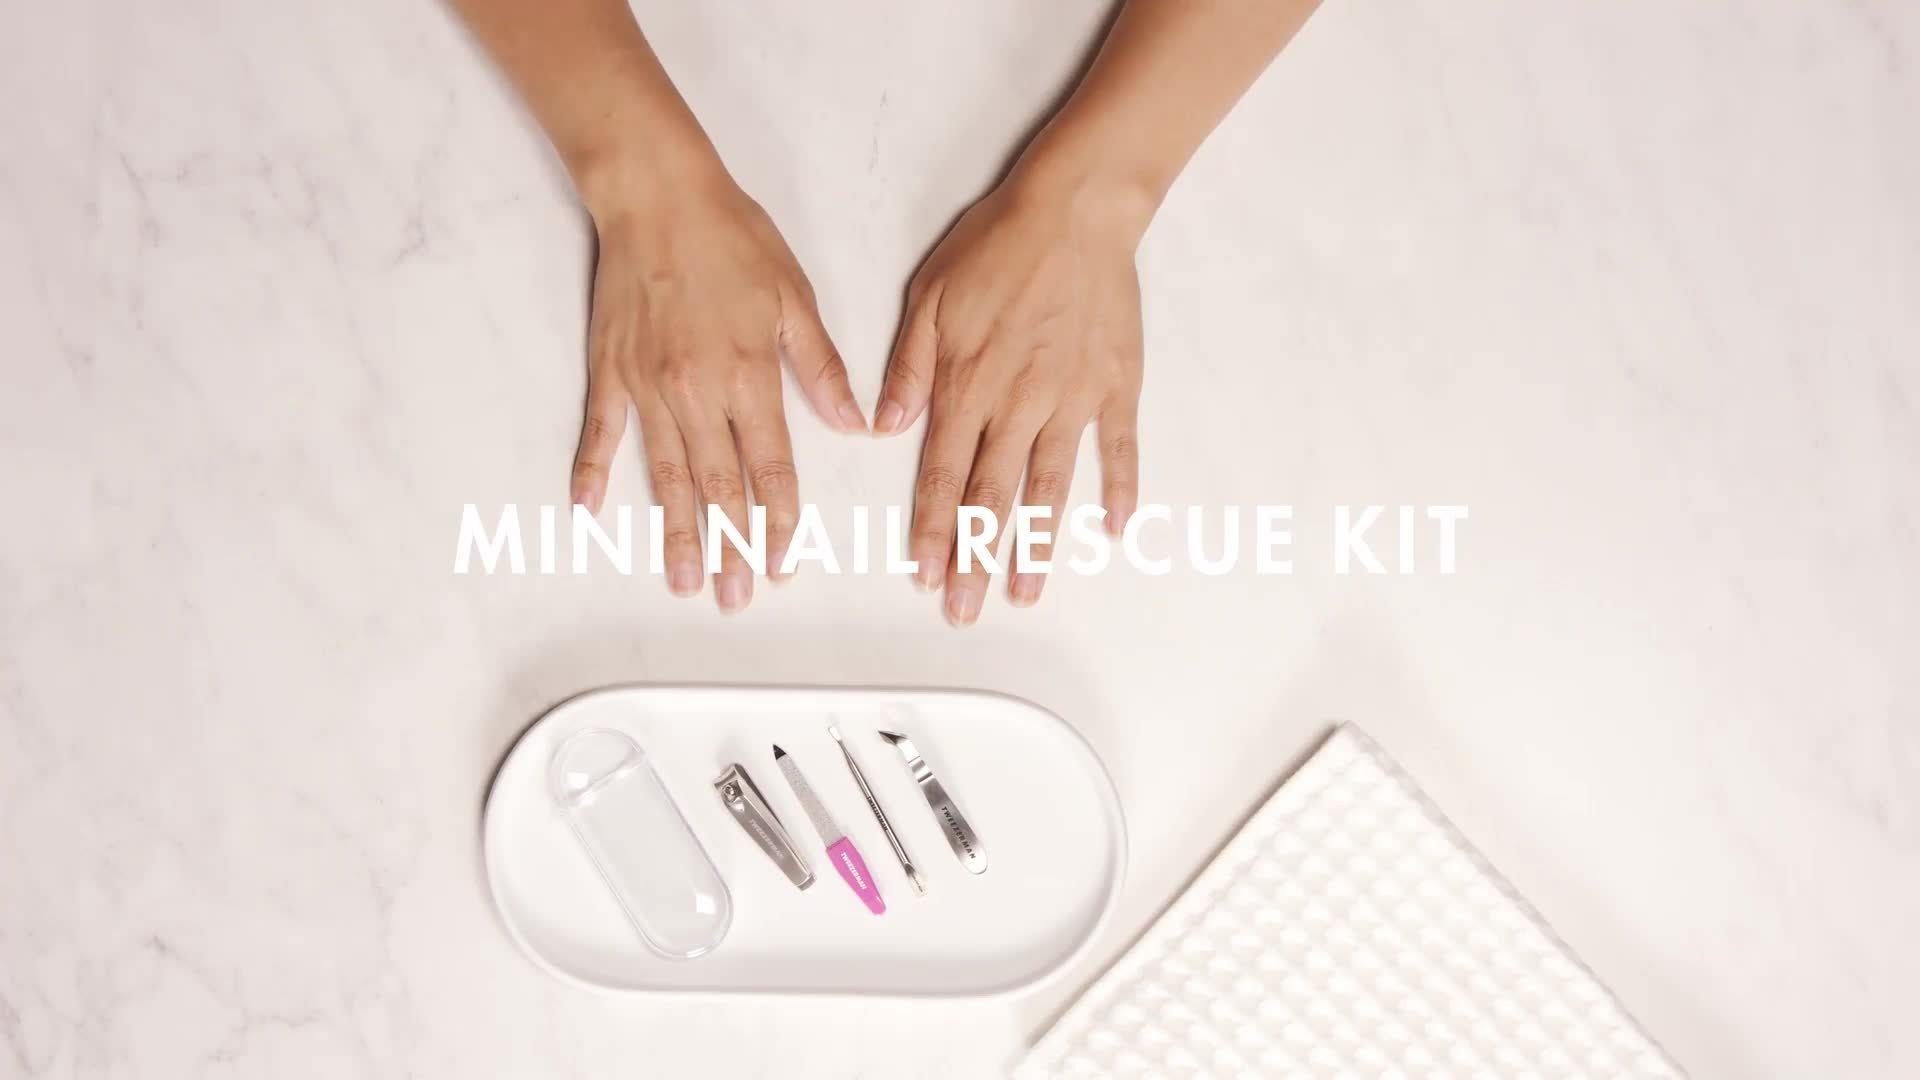 Mini Nail Rescue Kit - Tweezerman Beauty | Ulta